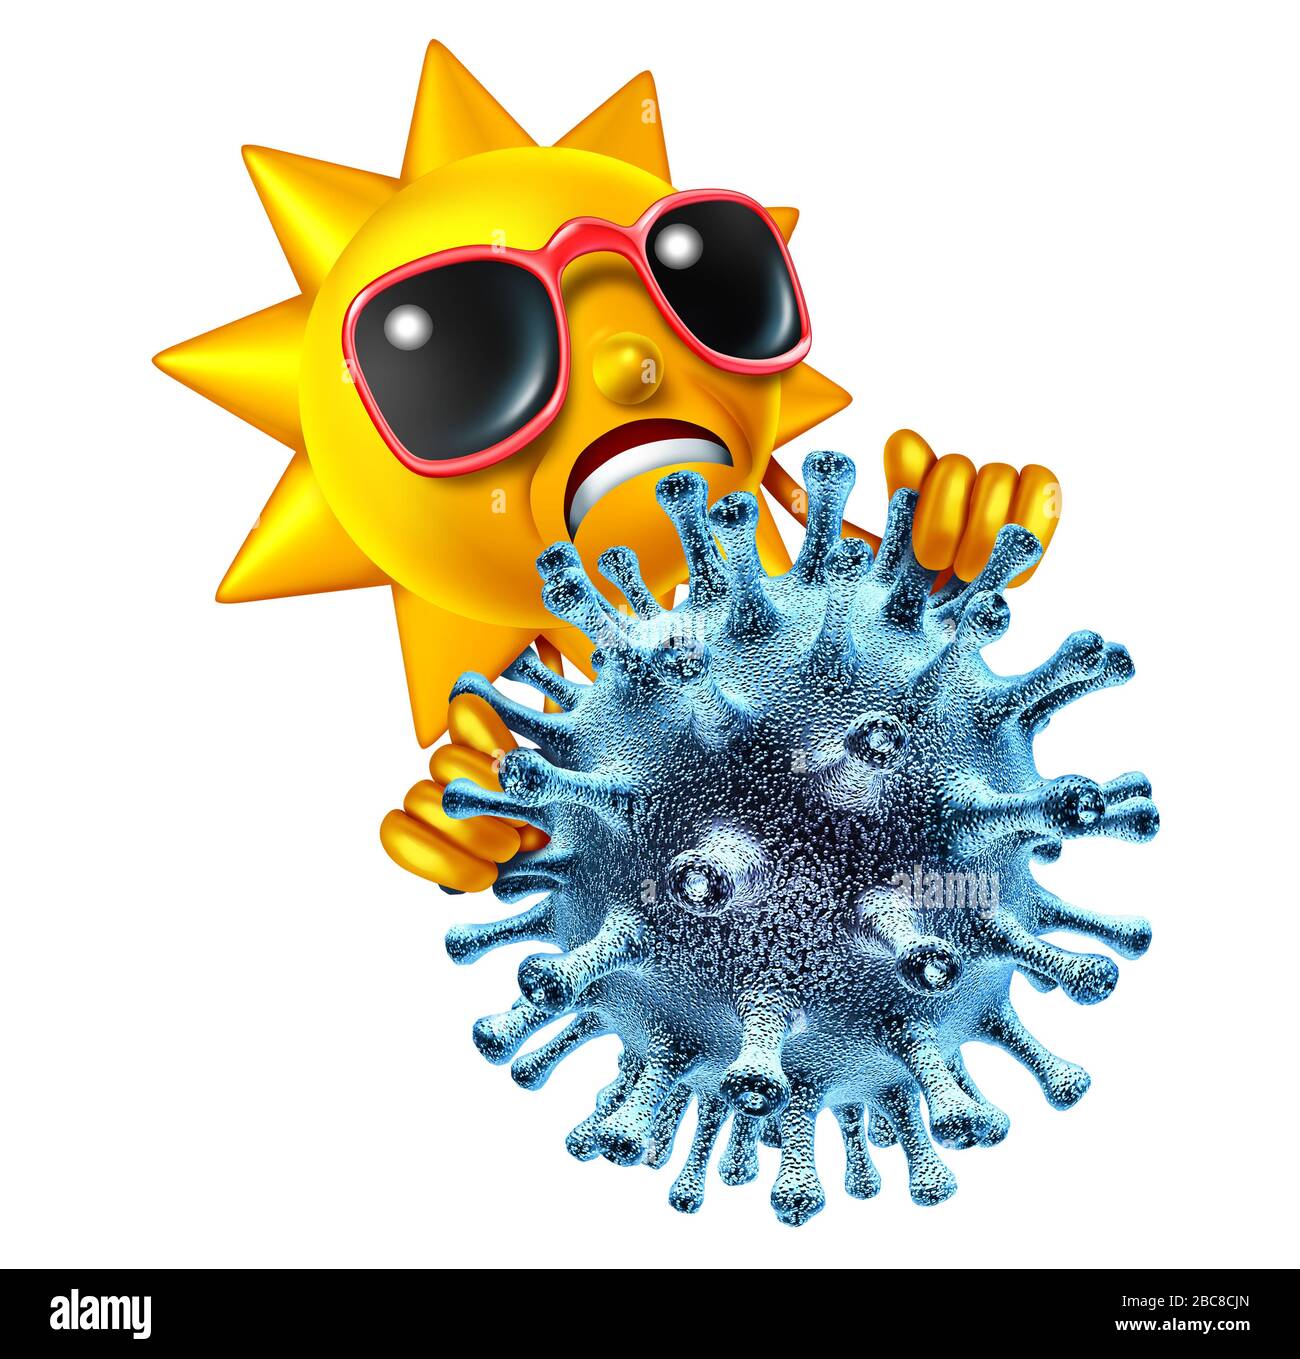 El virus de verano y los efectos de la pandemia del coronavirus superan las actividades de verano como un carácter triste del sol caliente que sostiene una célula patógena de la enfermedad. Foto de stock